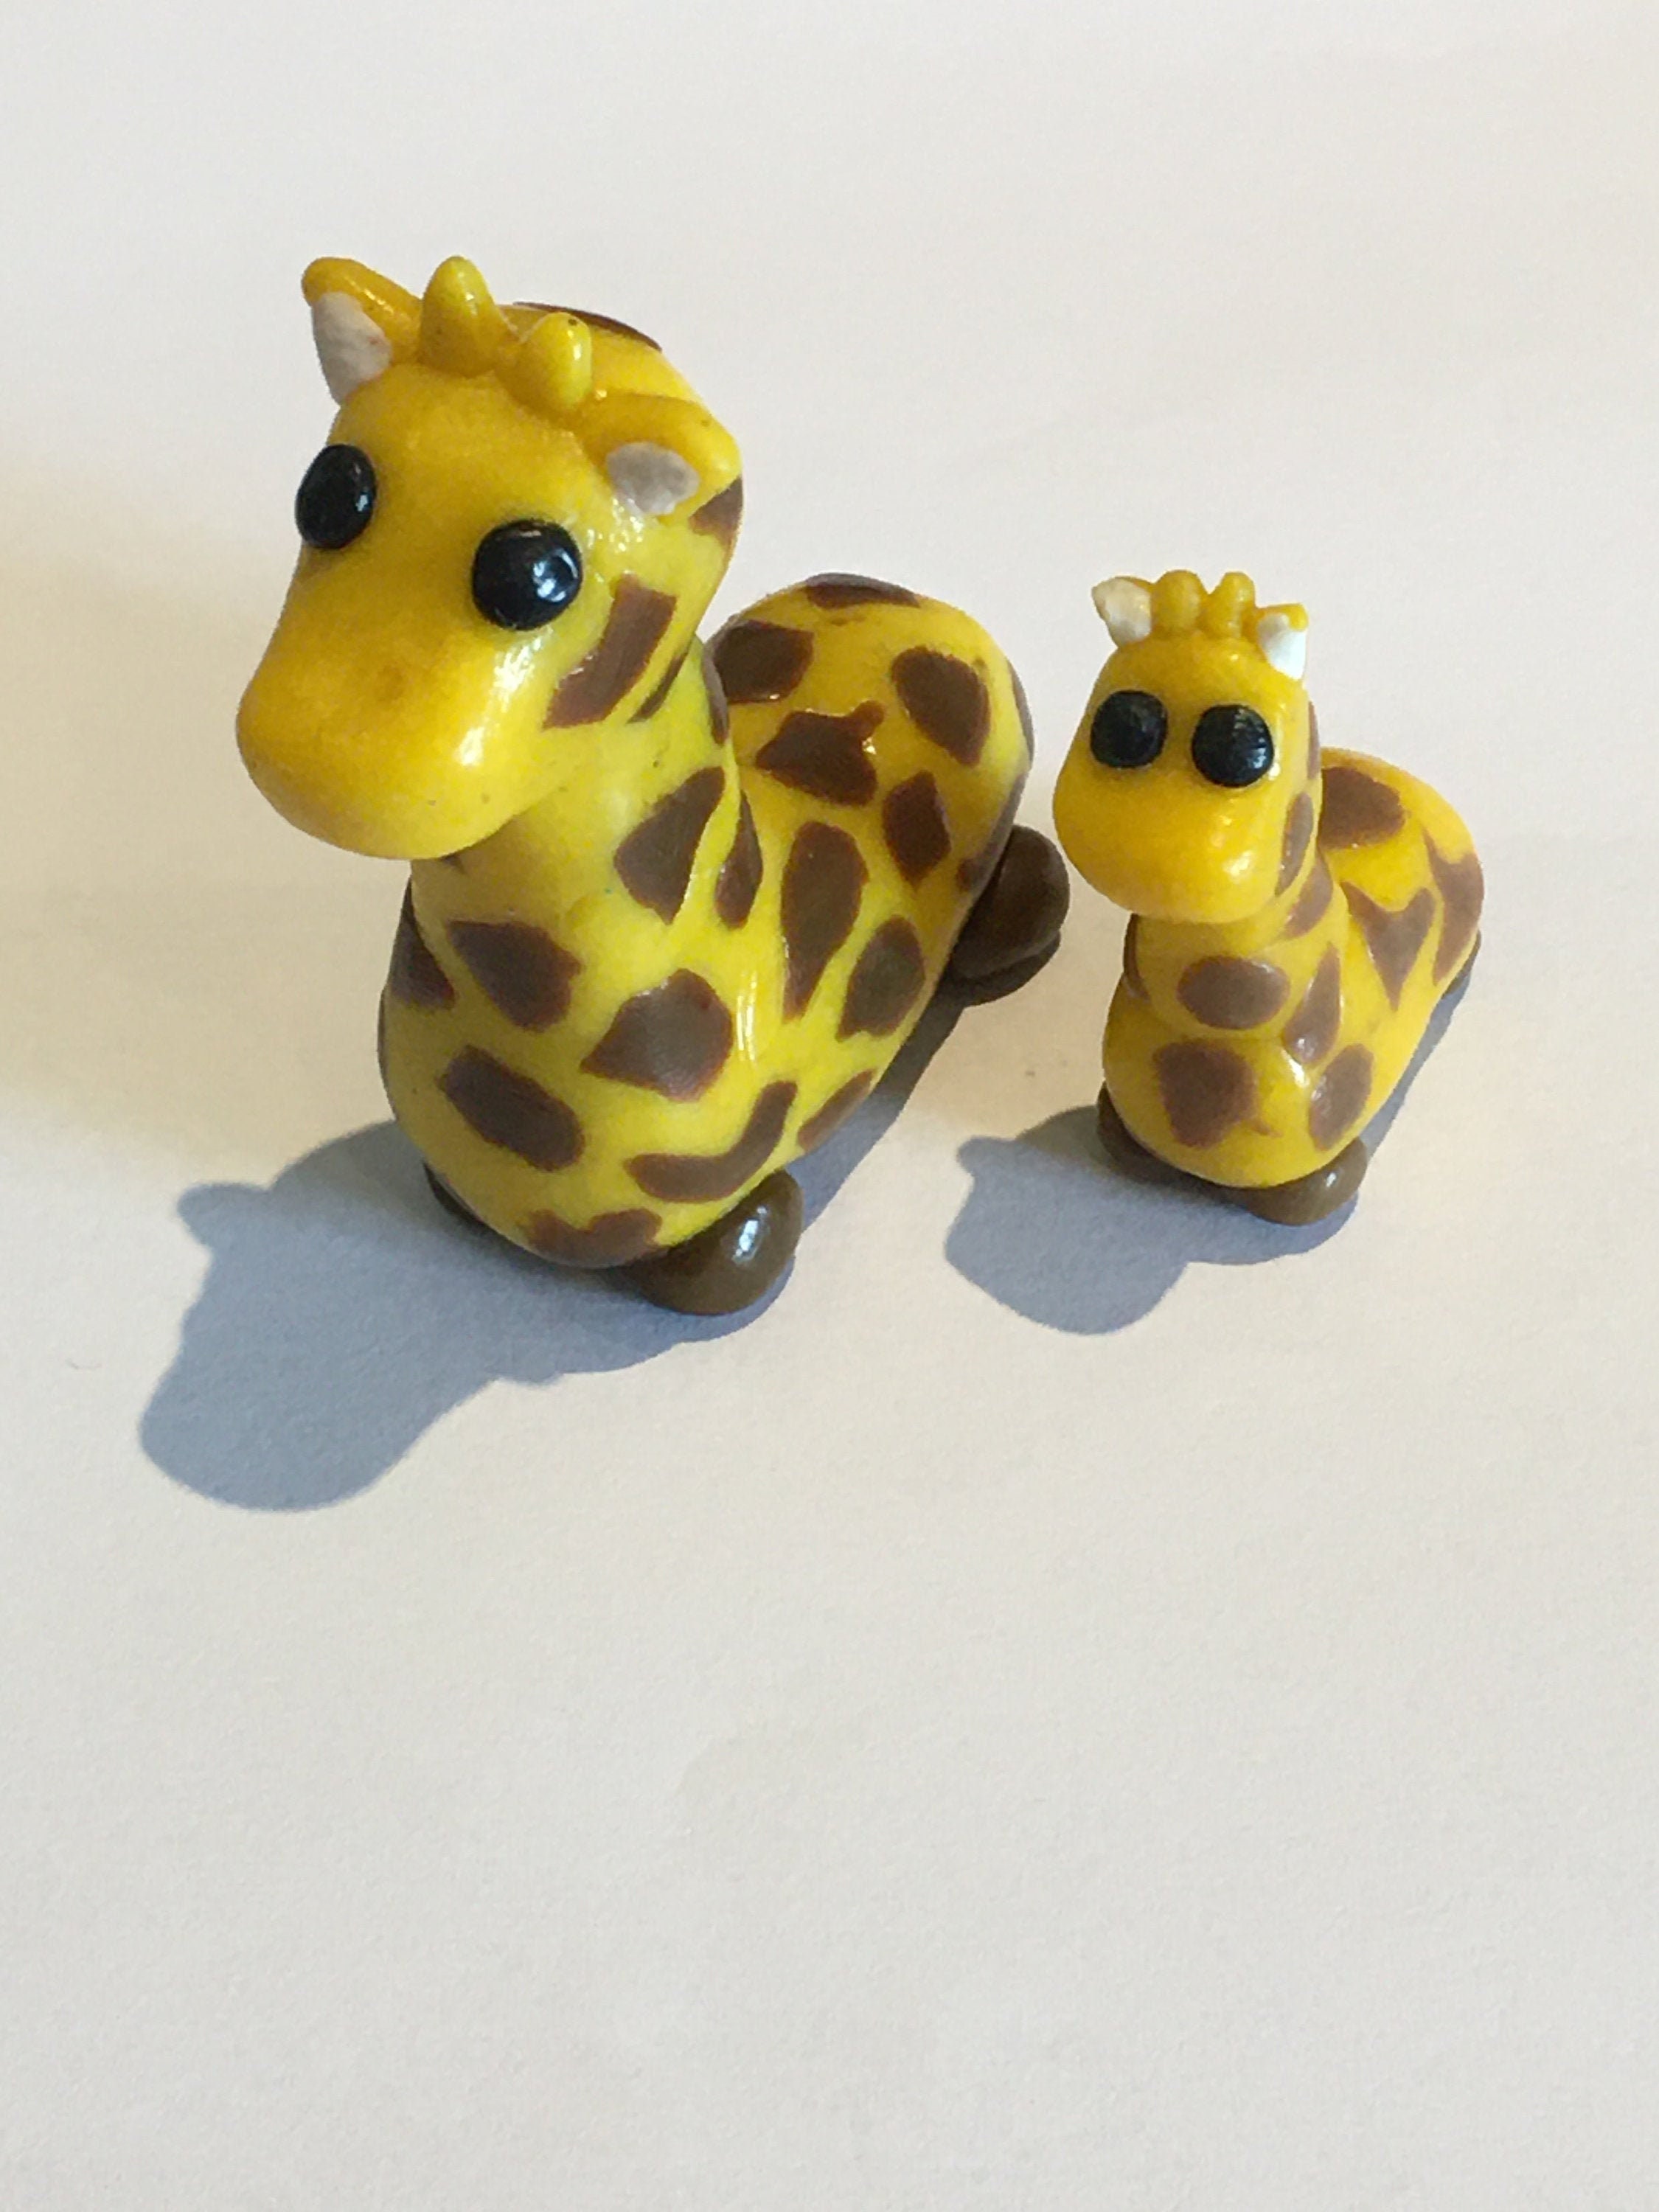 Adopt Me: Giraffe Pet - Adopt Me V2